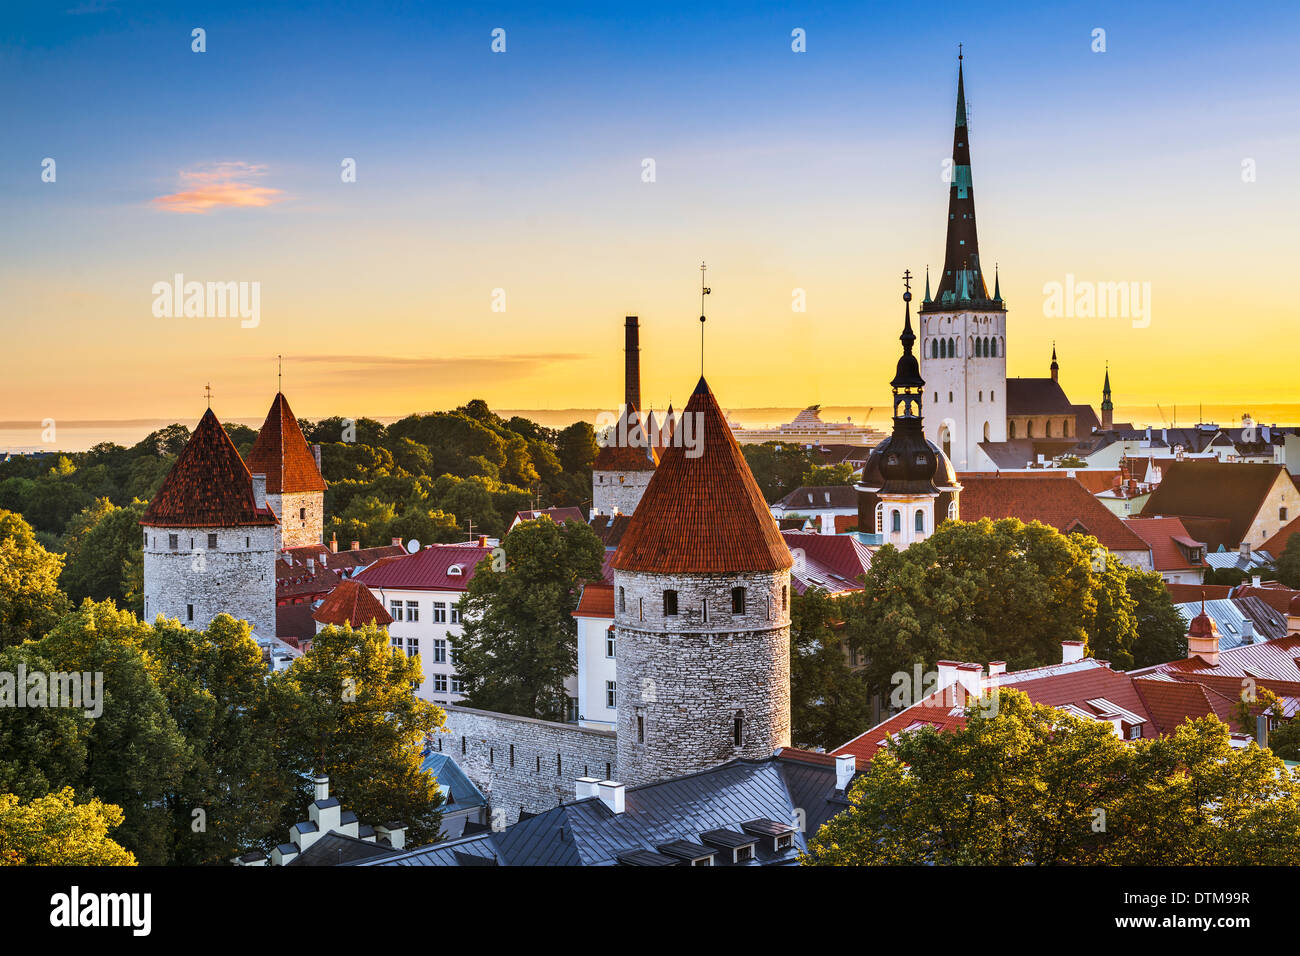 Tallinn, Estonia old city view. Stock Photo